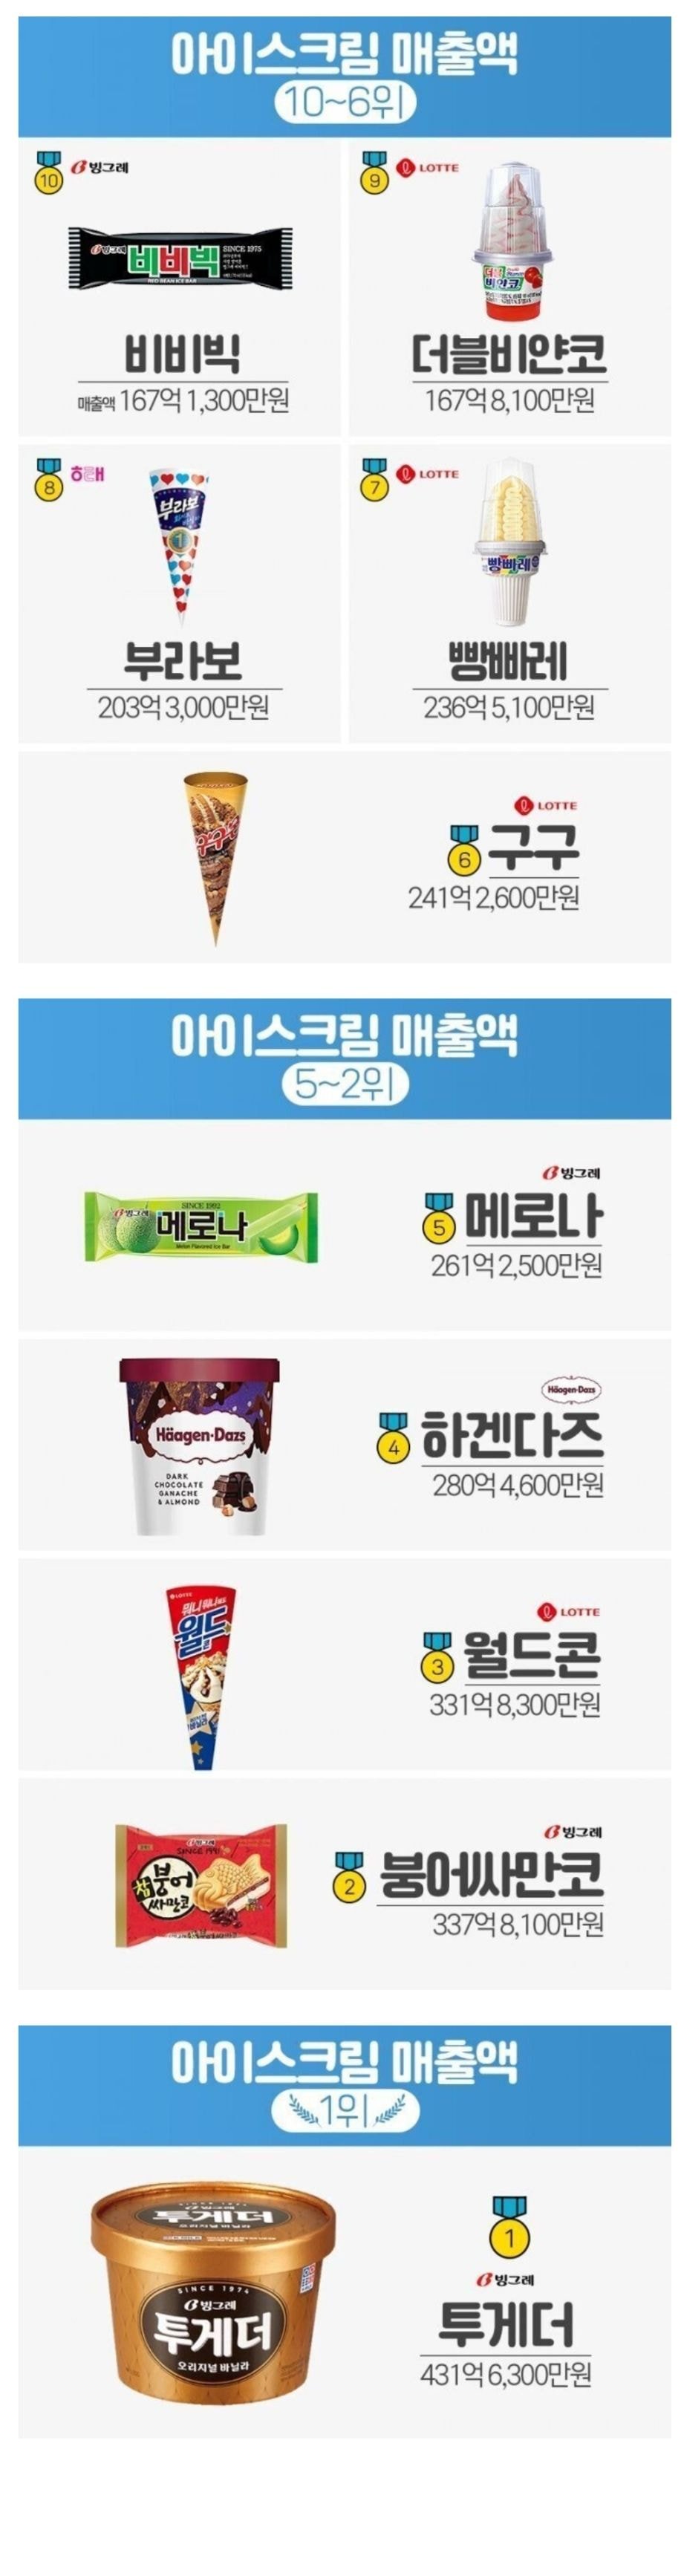 우리나라 아이스크림 매출액 순위 top10